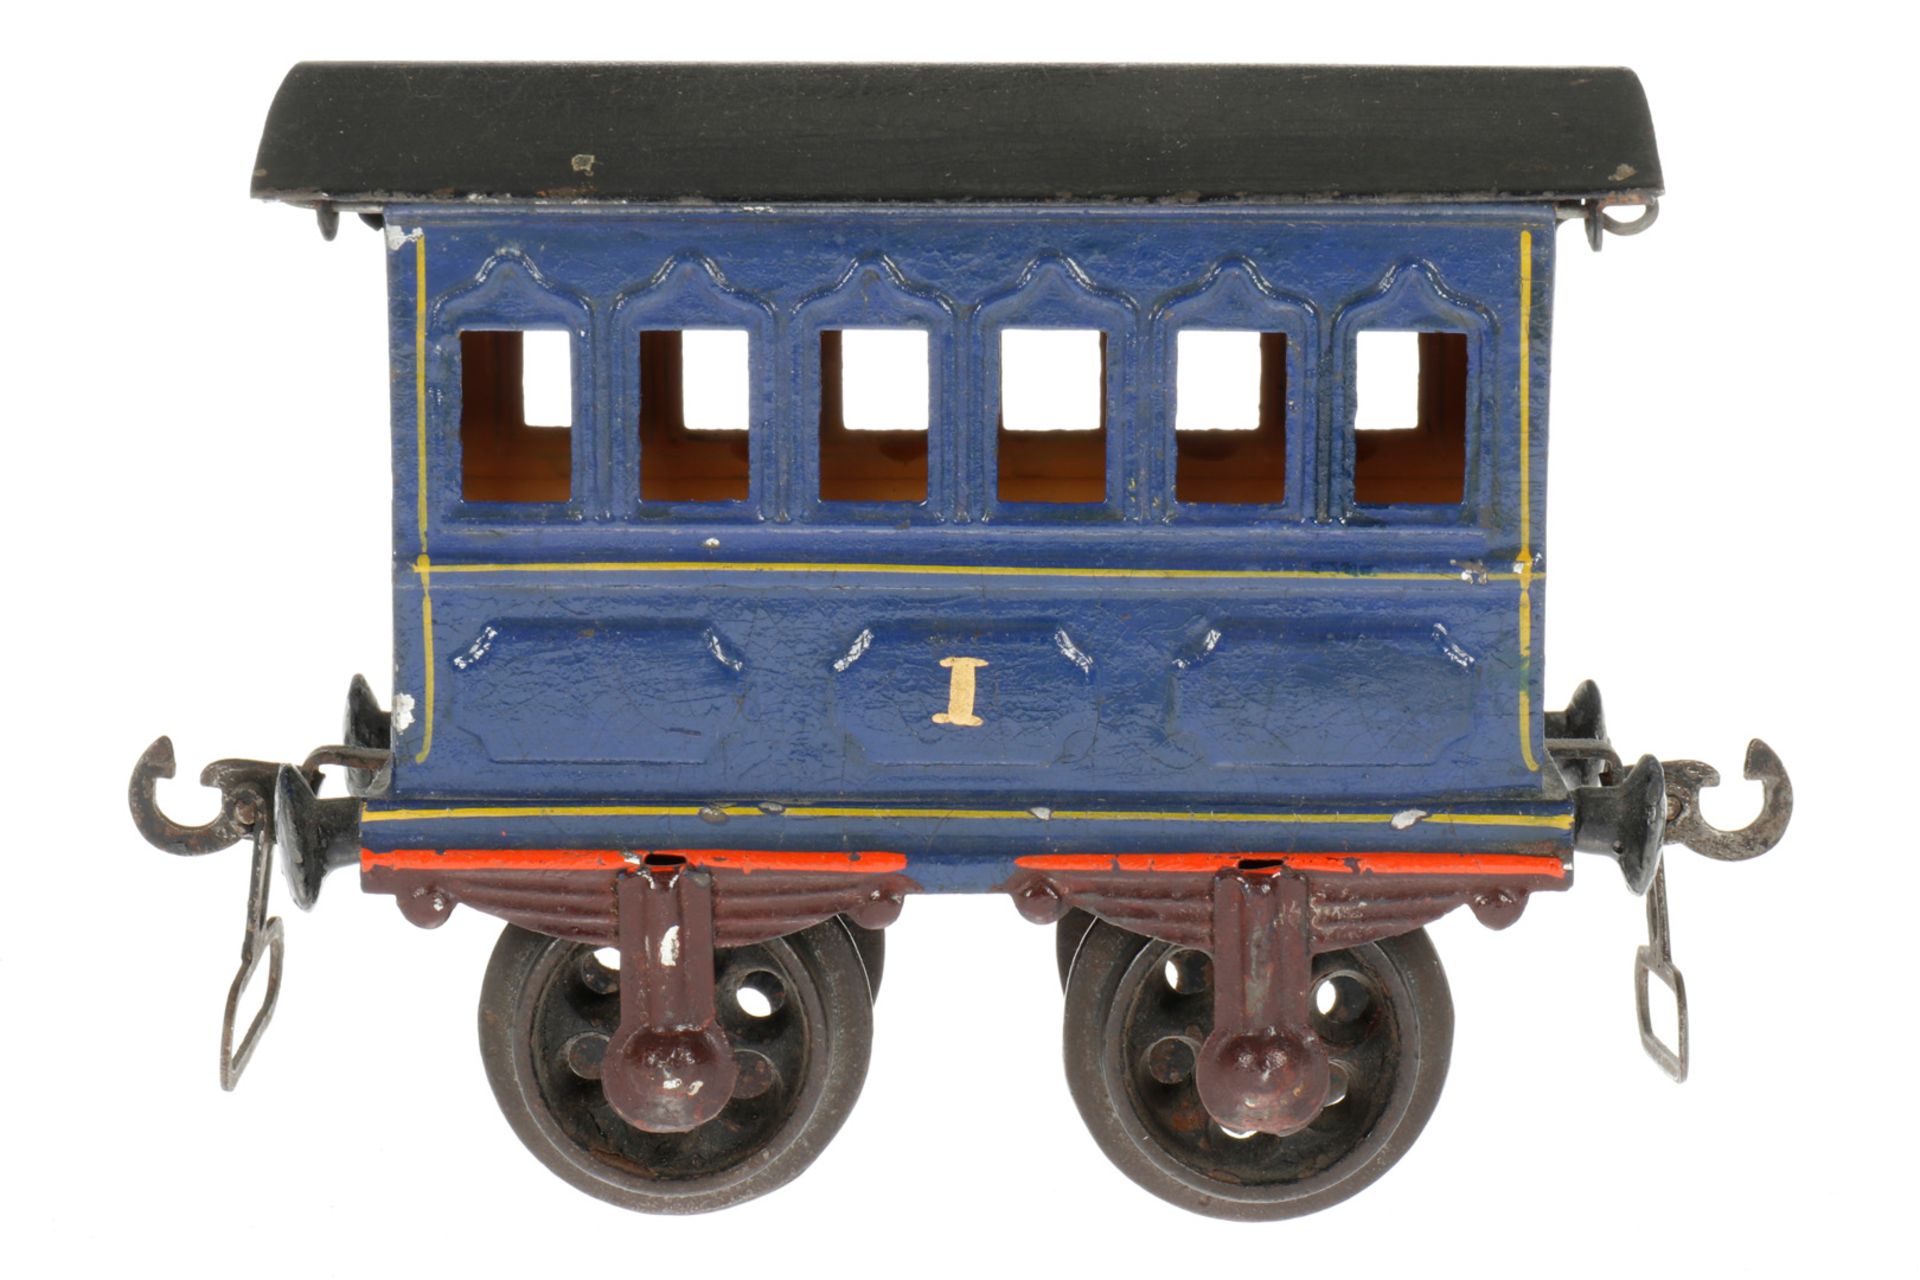 Märklin Personenwagen 1805, S 1, uralt, blau, HL, mit Gussrädern und Bügelkupplungen, kleine